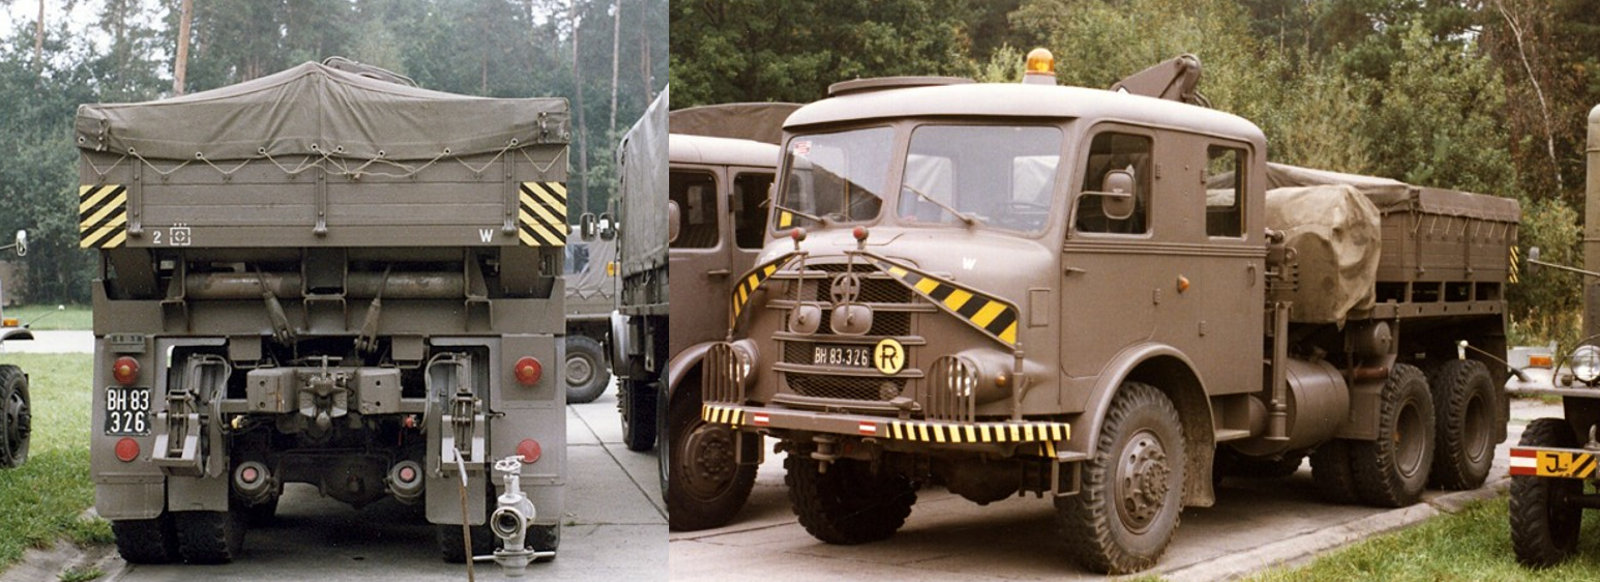 Gräf & Stift ZA230 der Werkstatt-Kompanie des Artillerieregiments 2 (auf dem linken Bild sind die Wurfkeile gut zu erkennen)